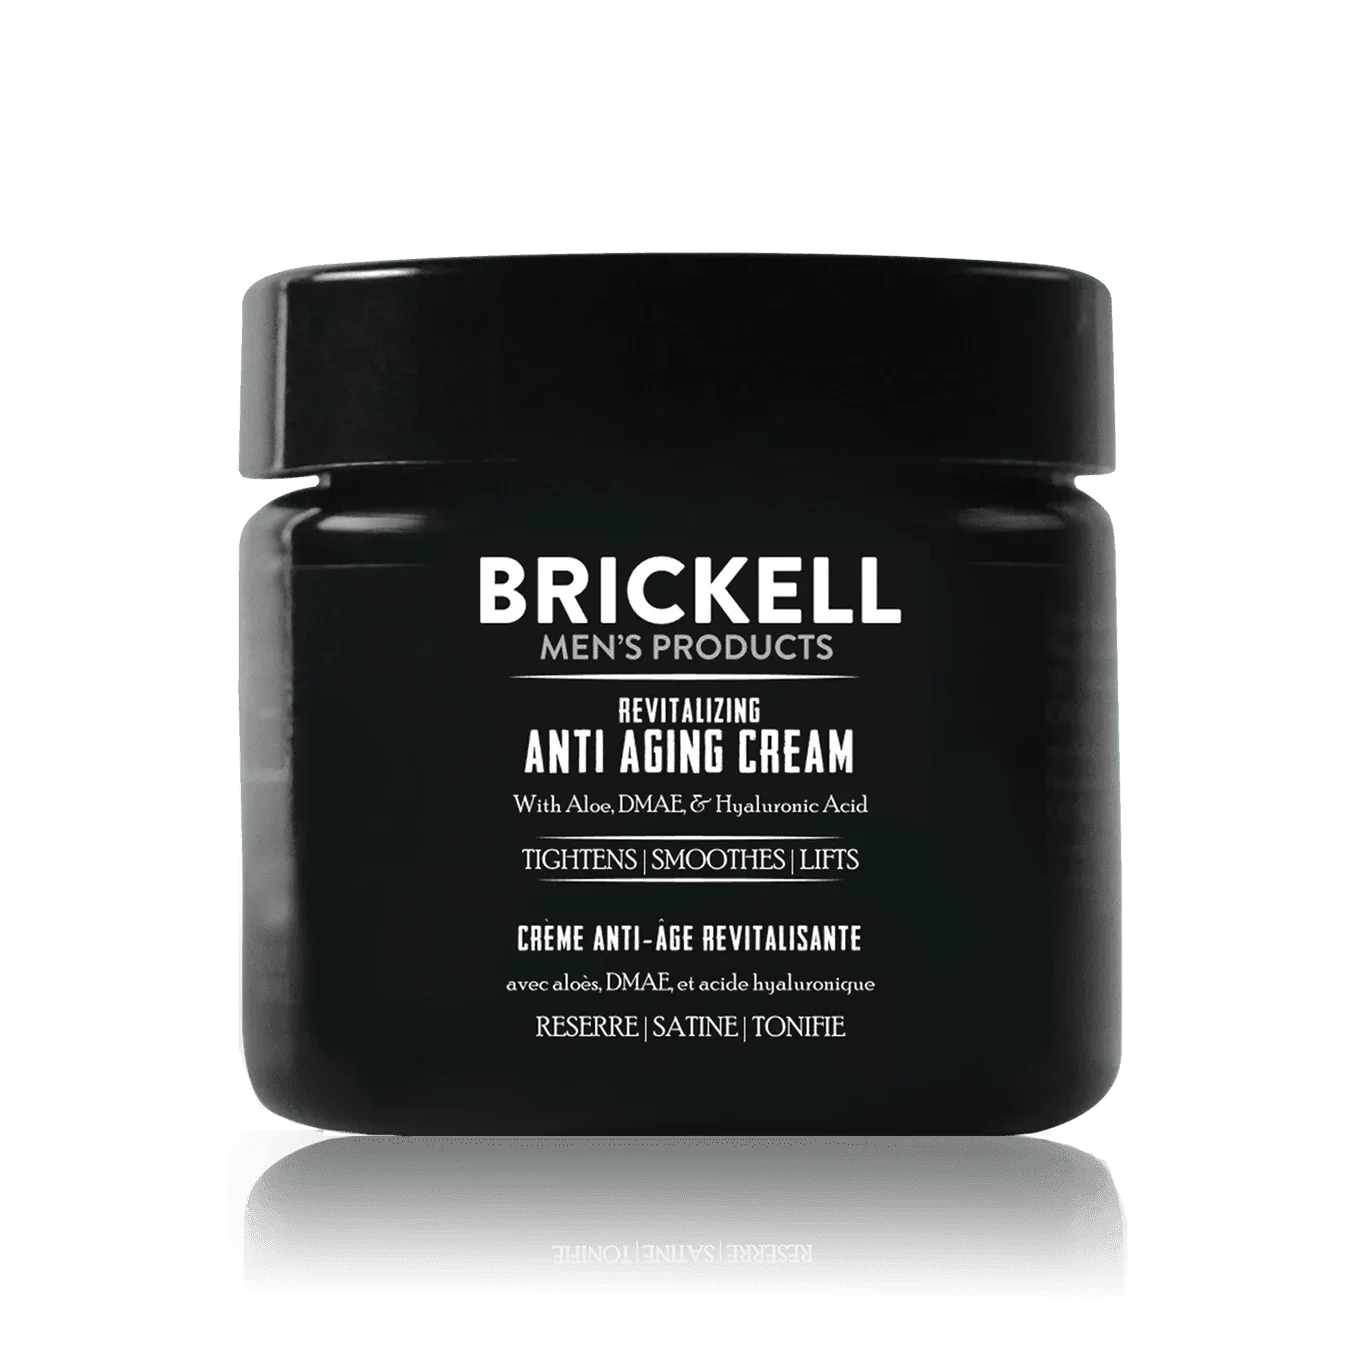 Brickell Revitalizing Anti-aging Cream